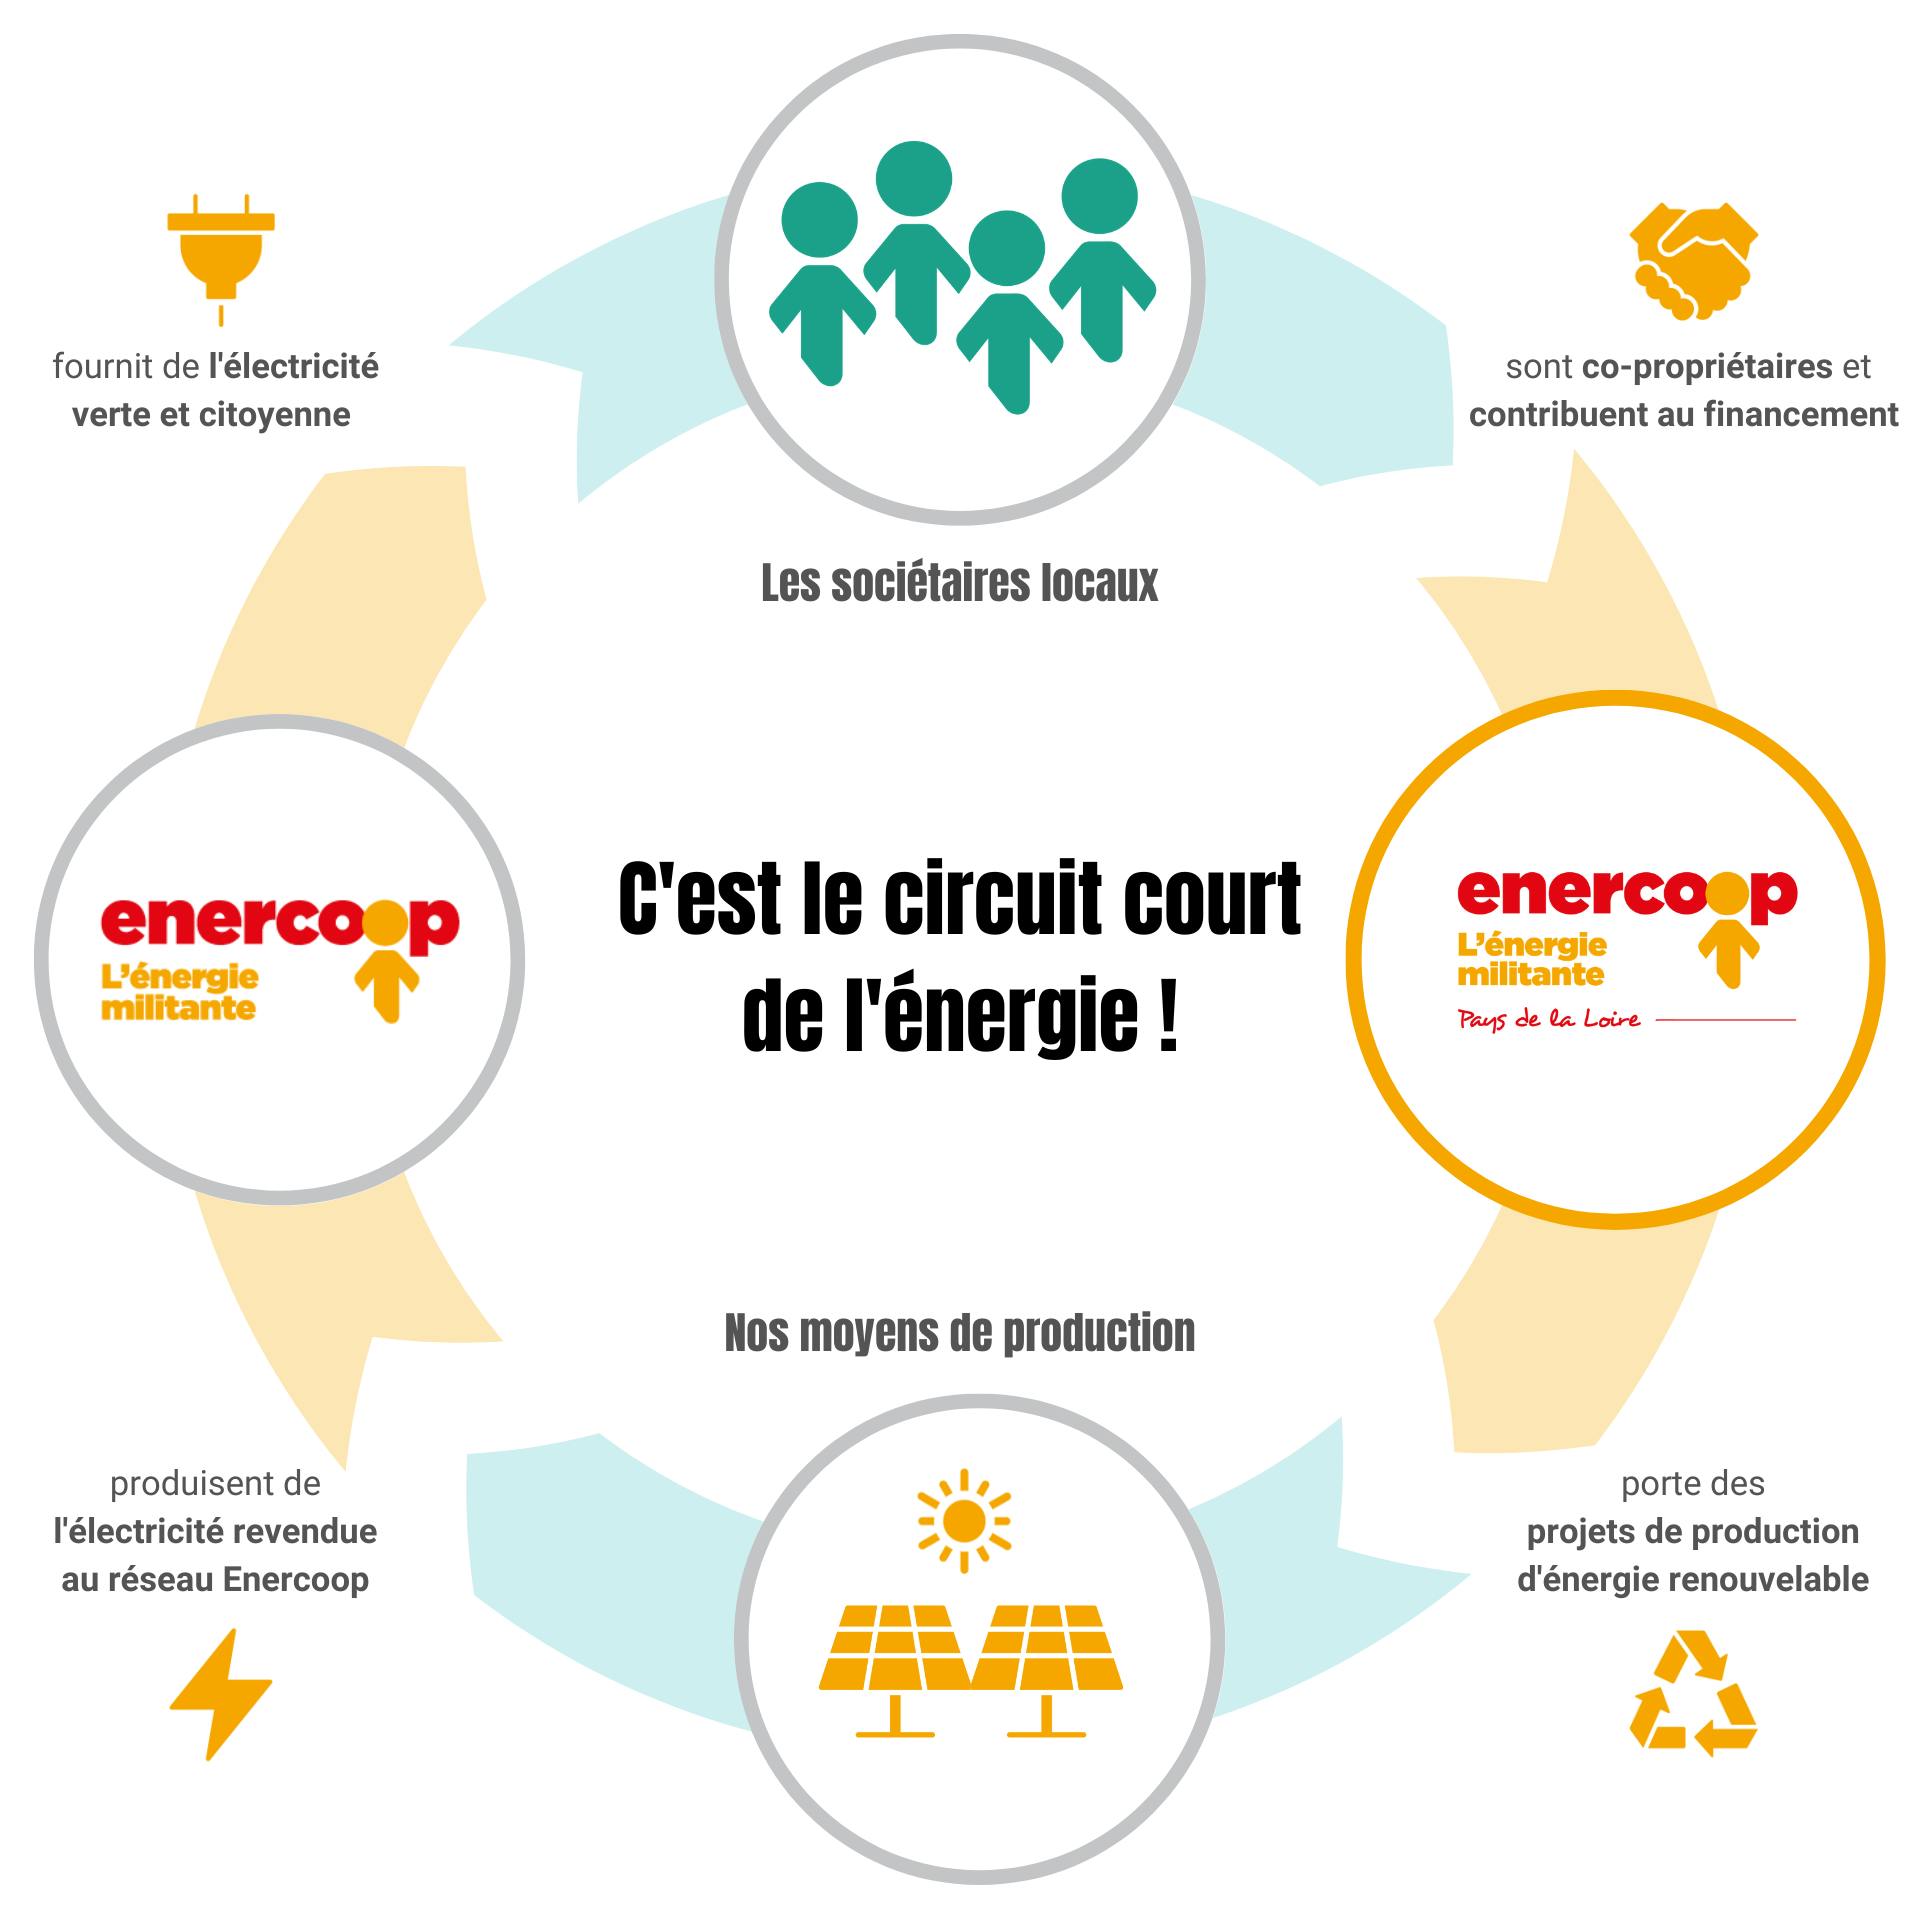 Le circuit court de l'énergie selon Enercoop